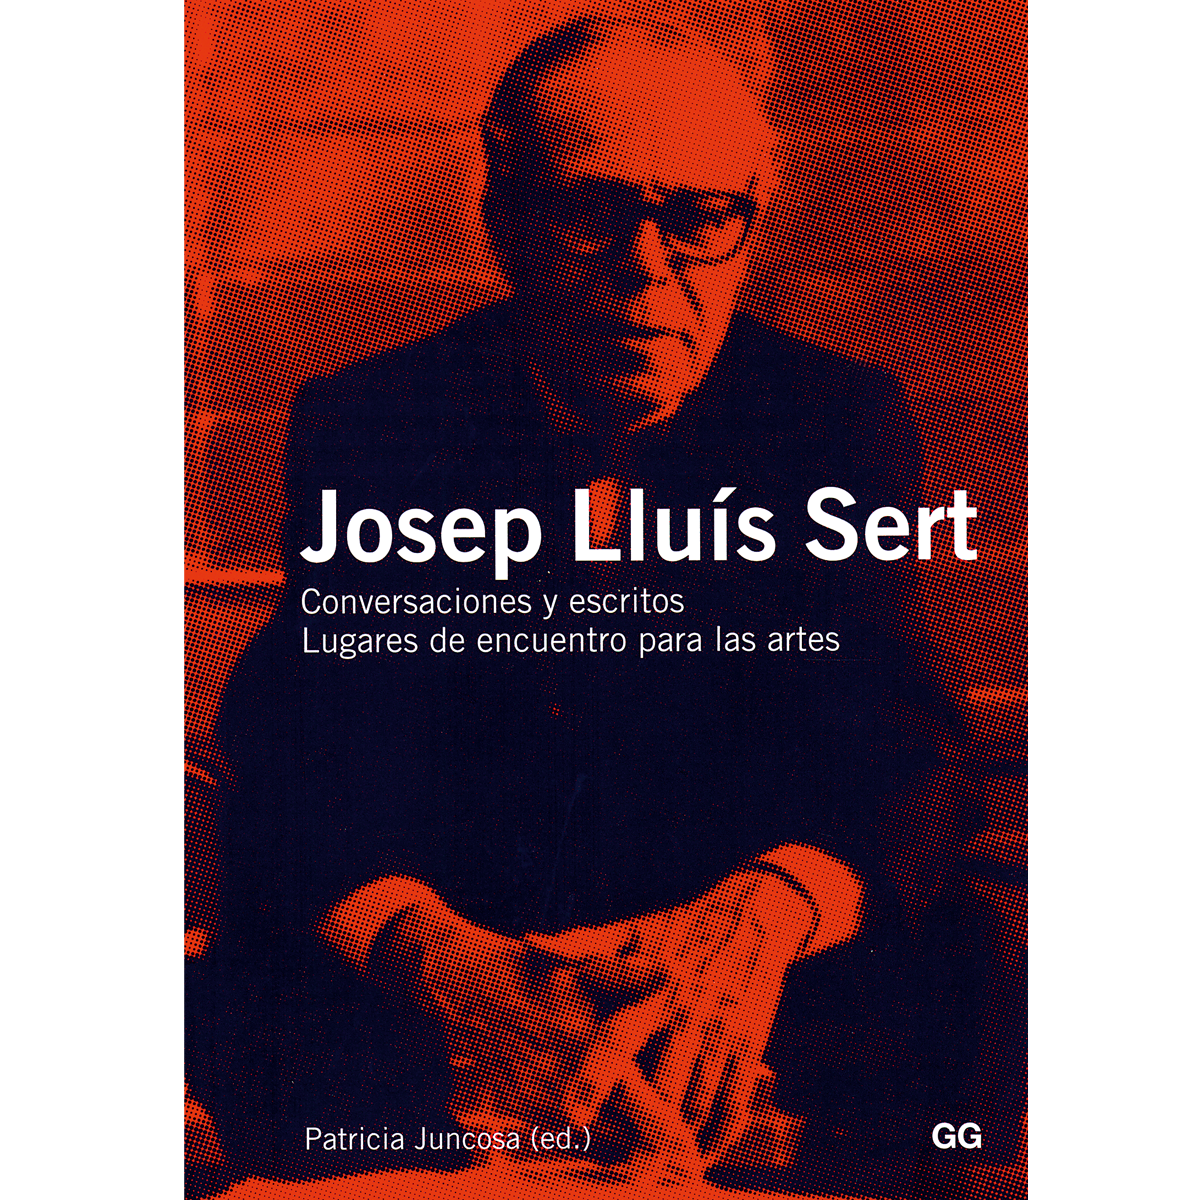 Josep Lluís Sert